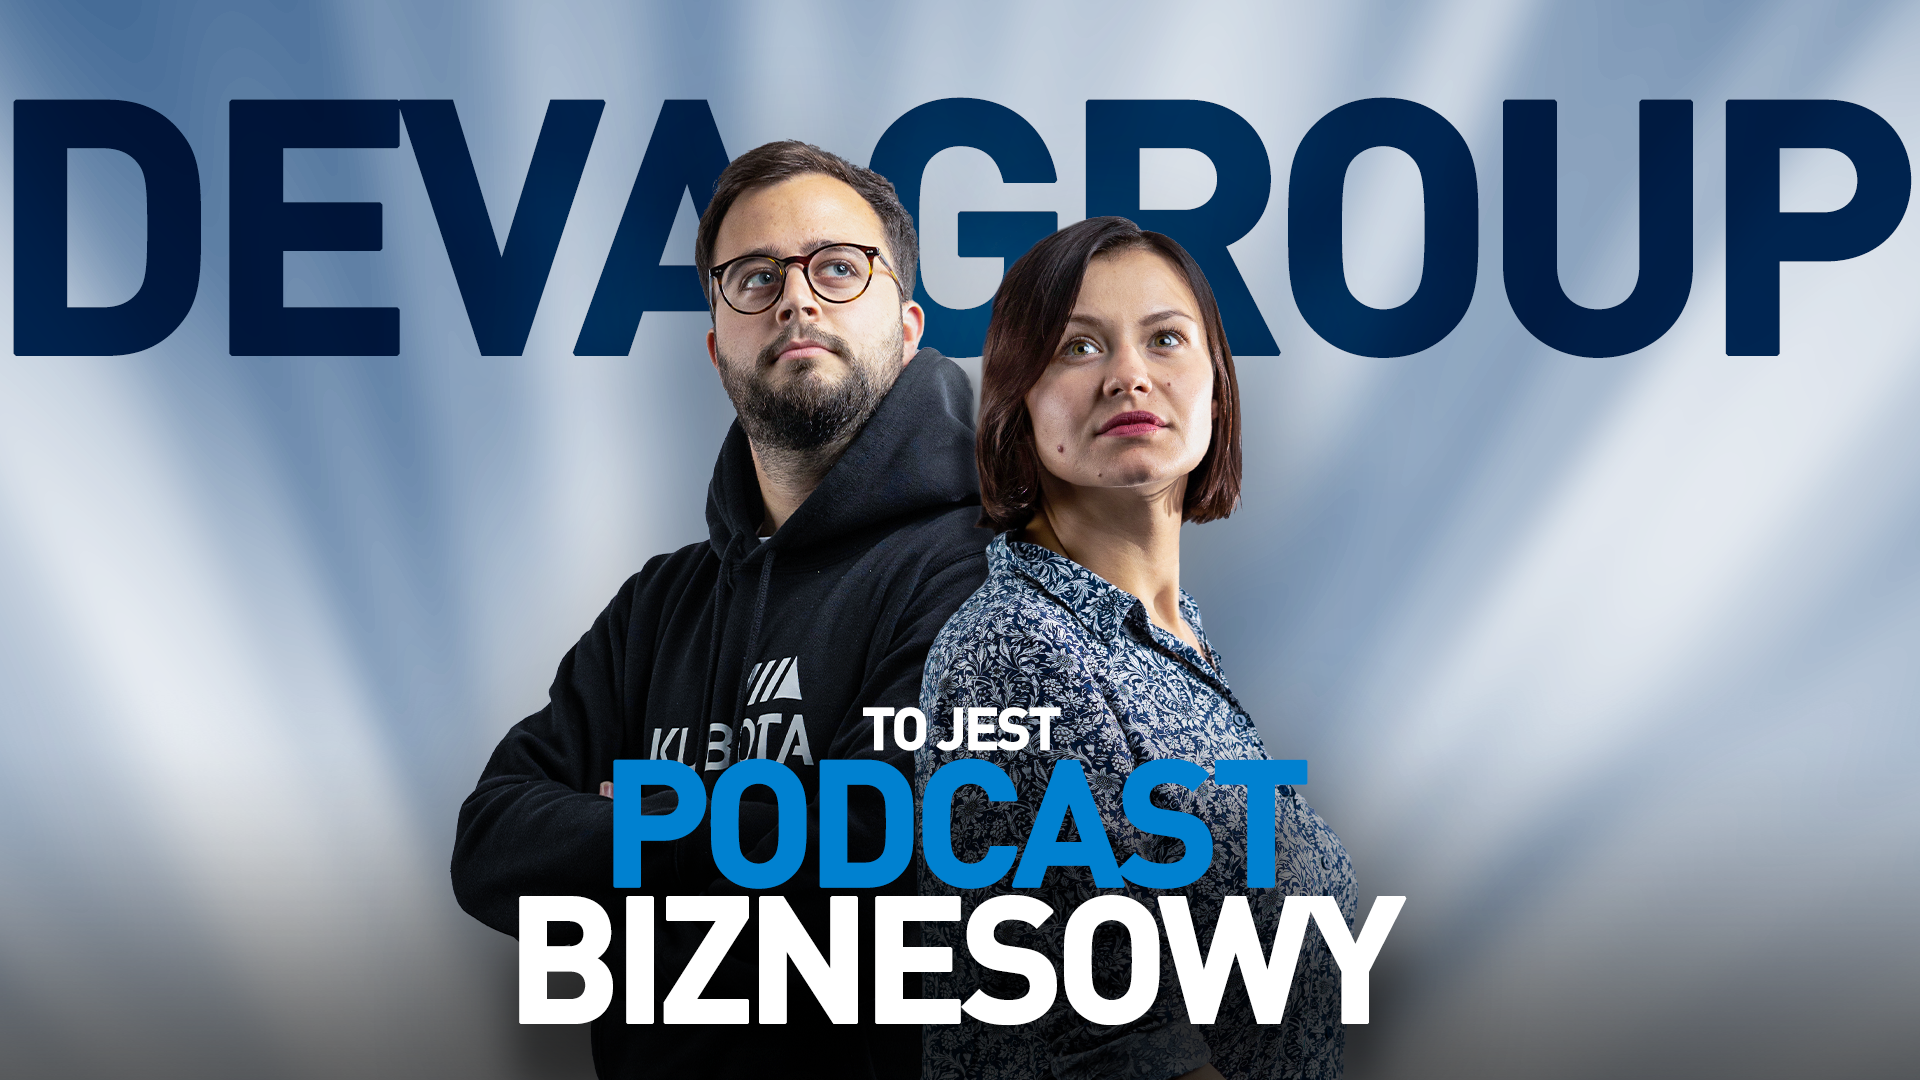 Podcast Biznesowy: Krzysztof Marzec (DevaGroup)